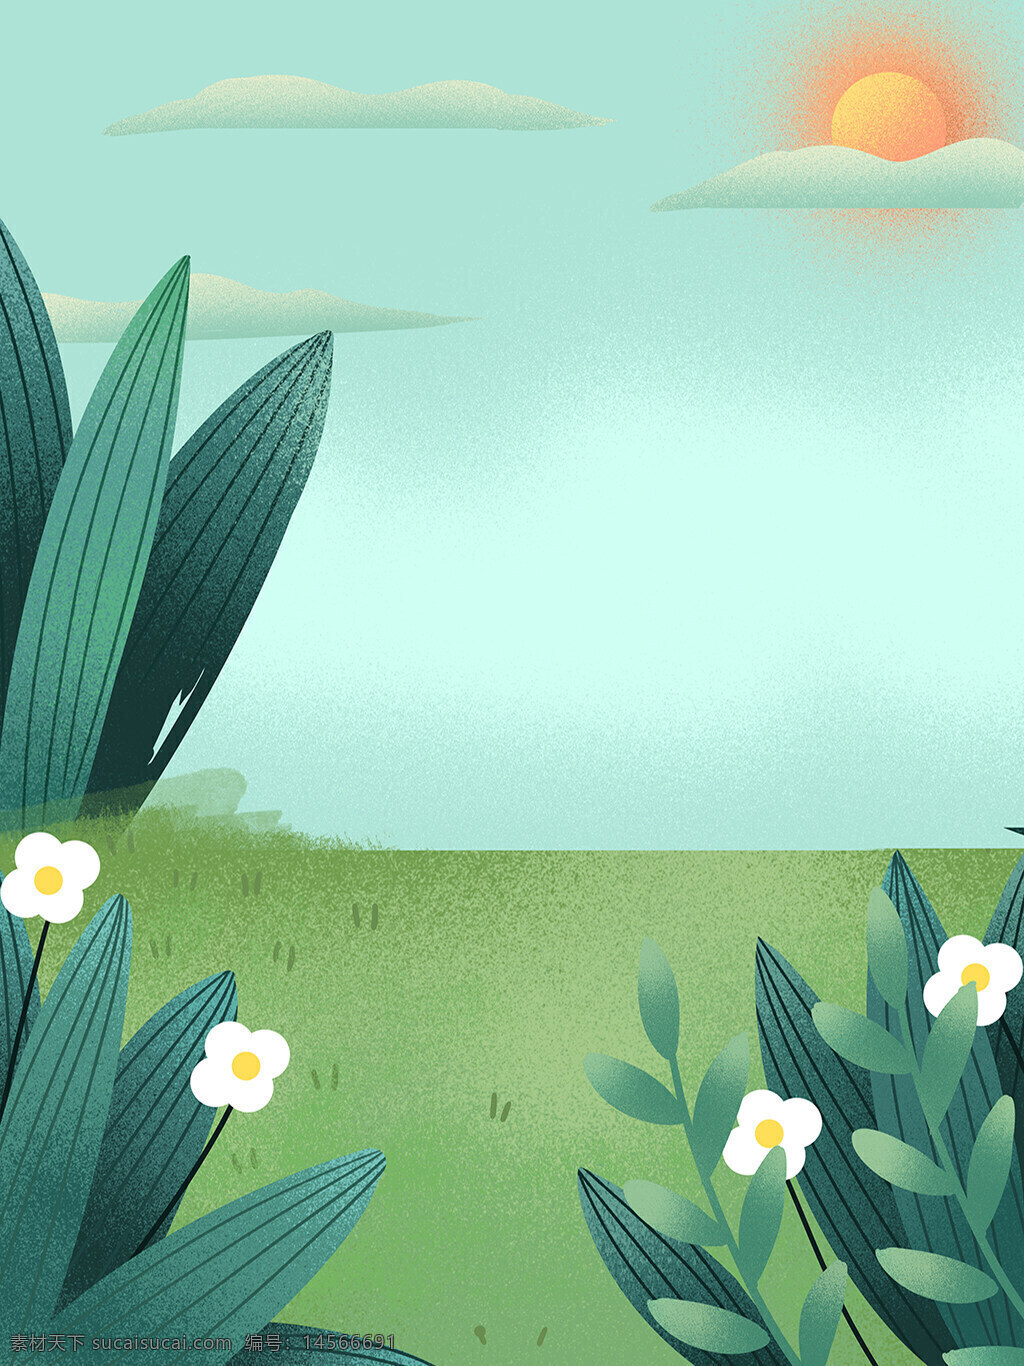 草地背景 插画背景 广告背景 河边 蓝天白云 绿地背景 山水风景 植物背景